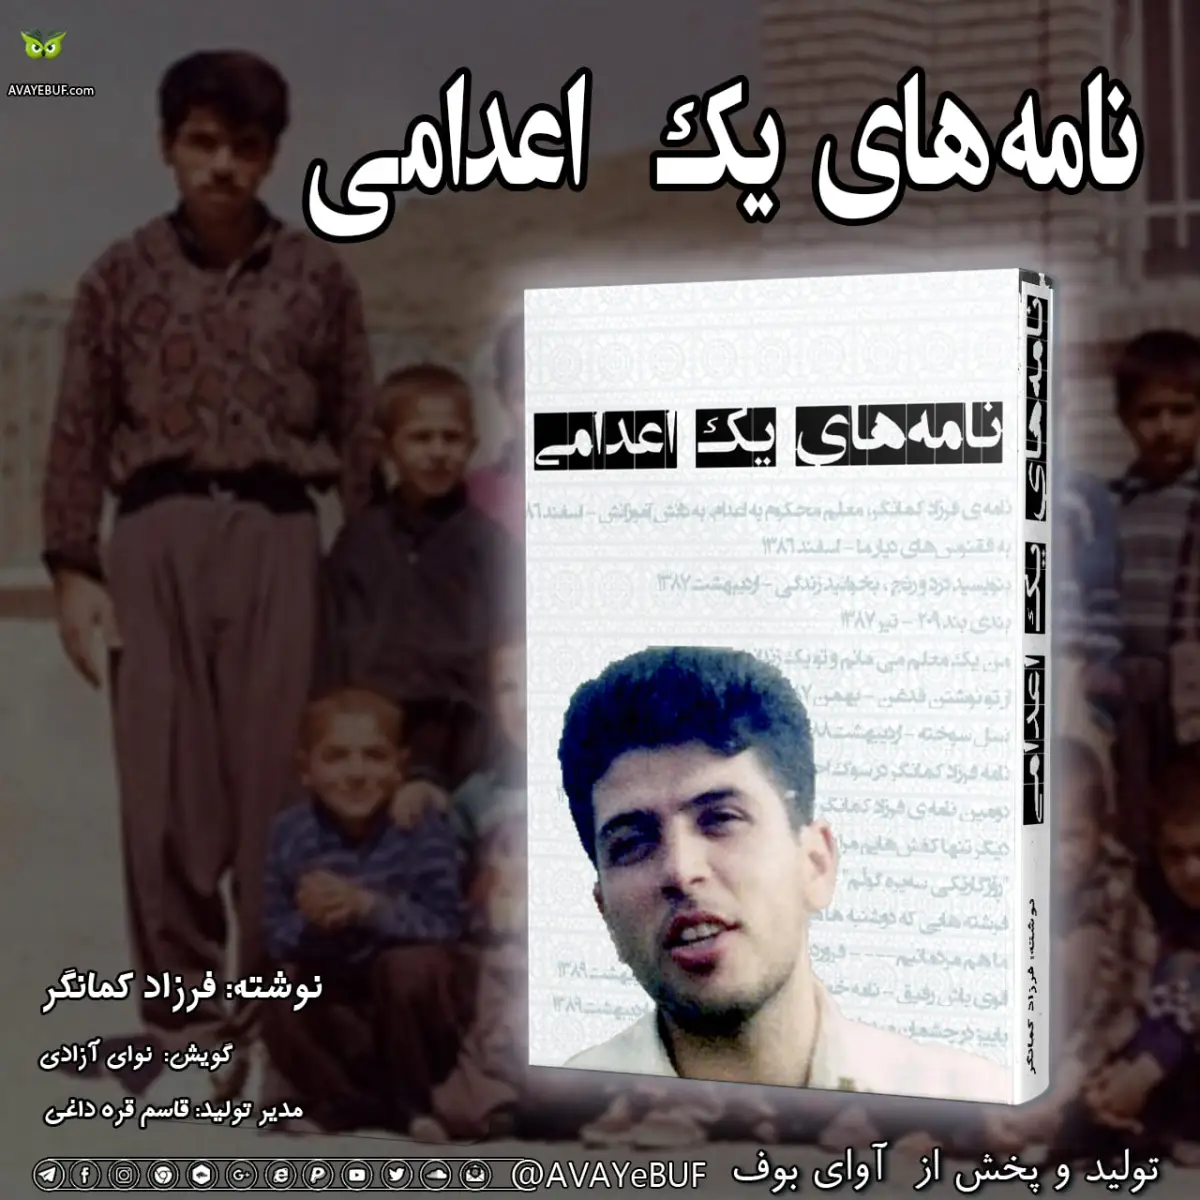 نامه‌های یک اعدامی | نویسنده فرزاد کمانگر | گویش: نوای آزادی | تولید صوتی آوای بوف